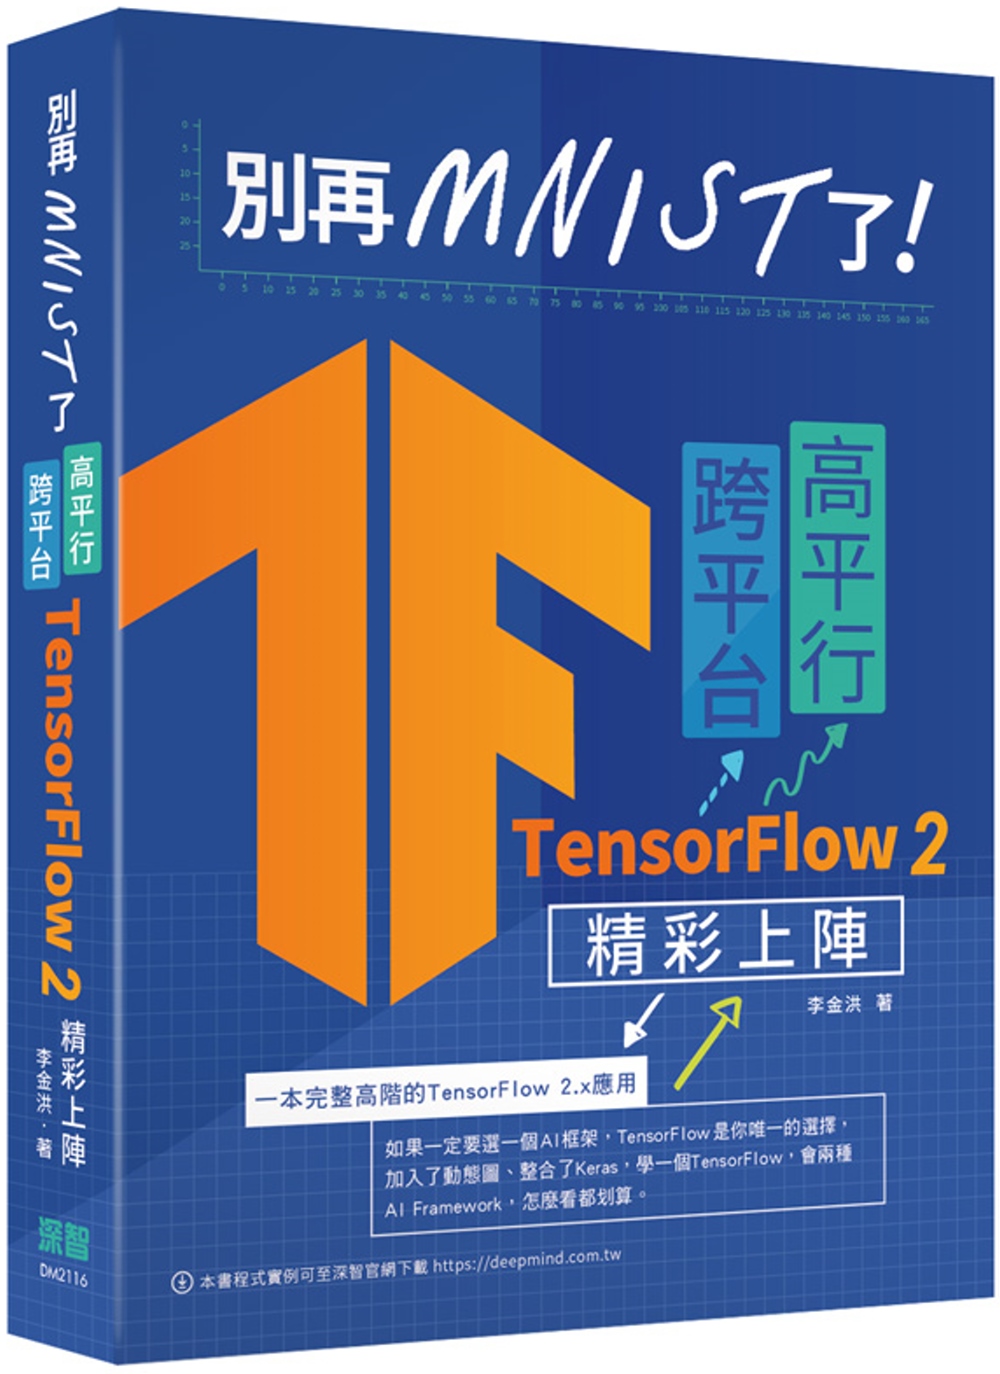 別再mnist了：跨平台高平行TensorFlow 2精彩上...